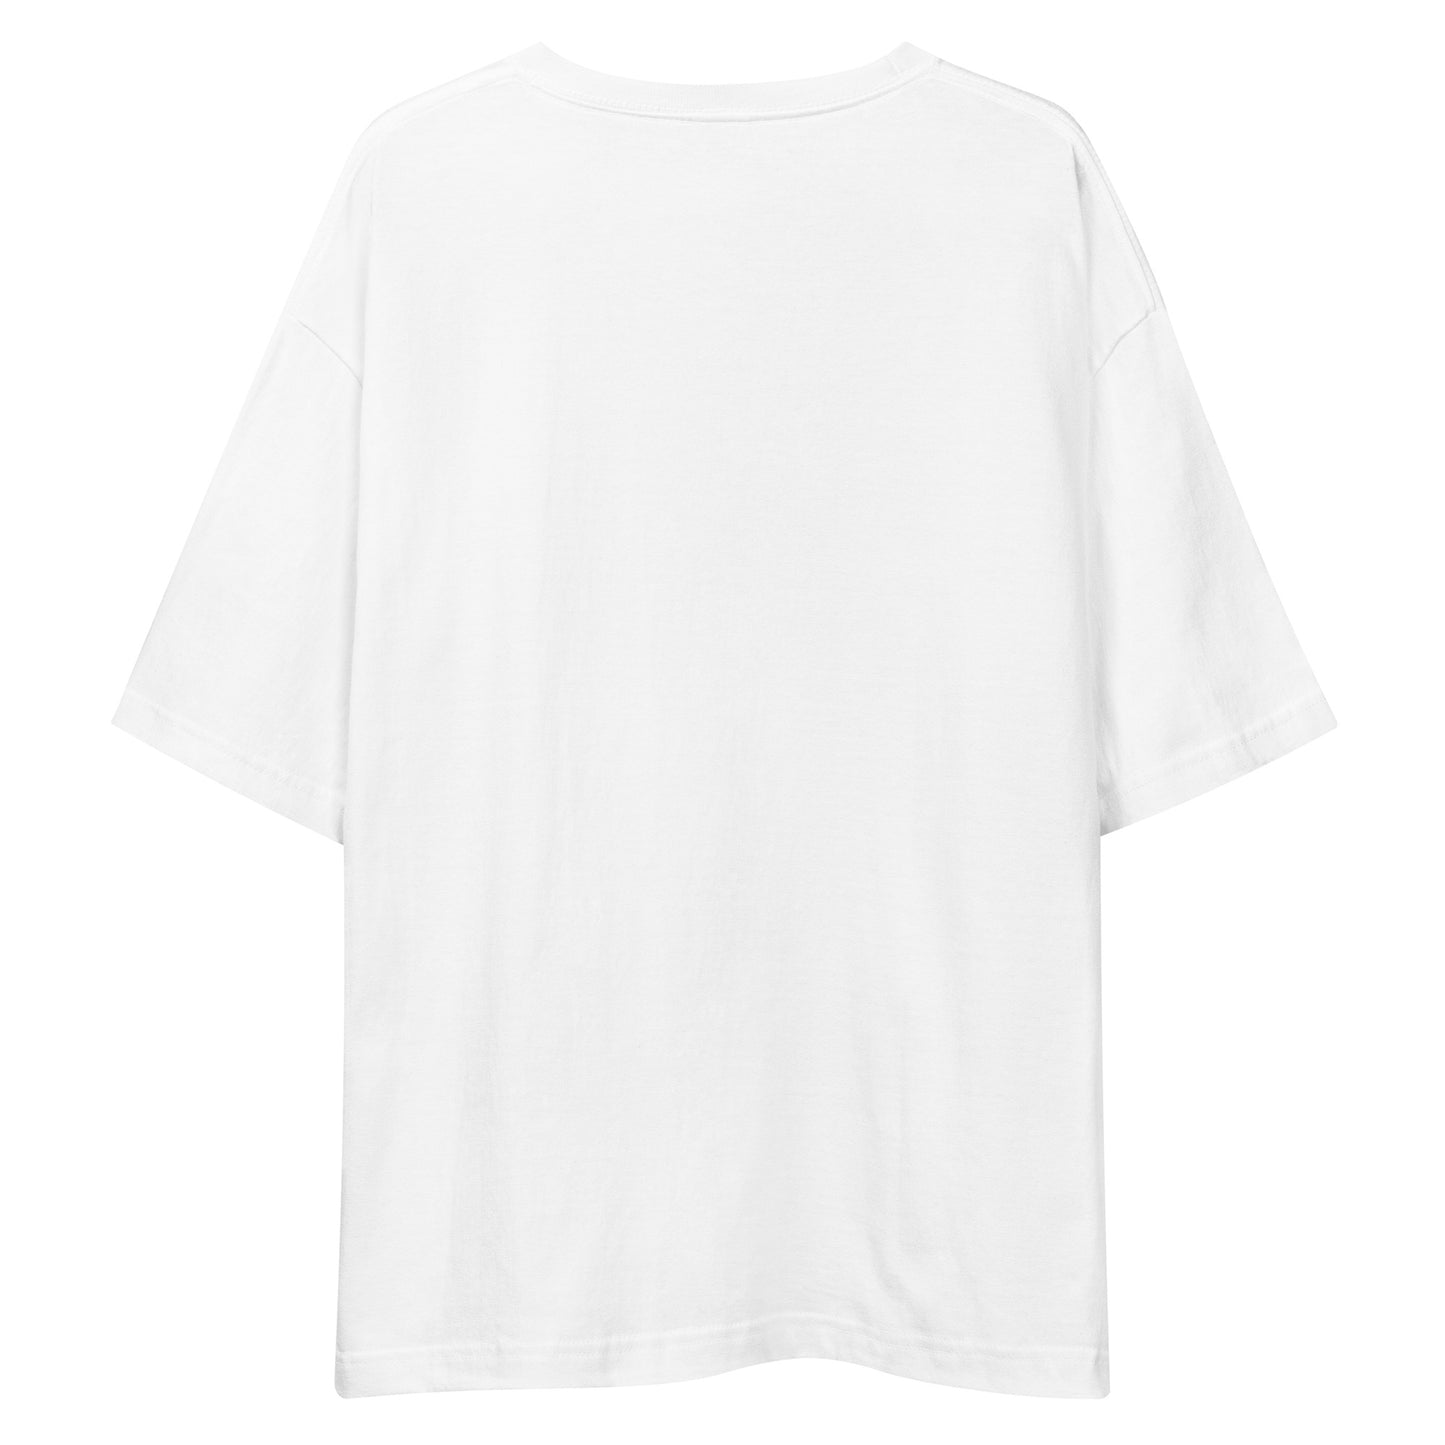 E236 - เสื้อยืด/ภาพเงาใหญ่ (วิบากชนะ : สีขาว/สีดำ)